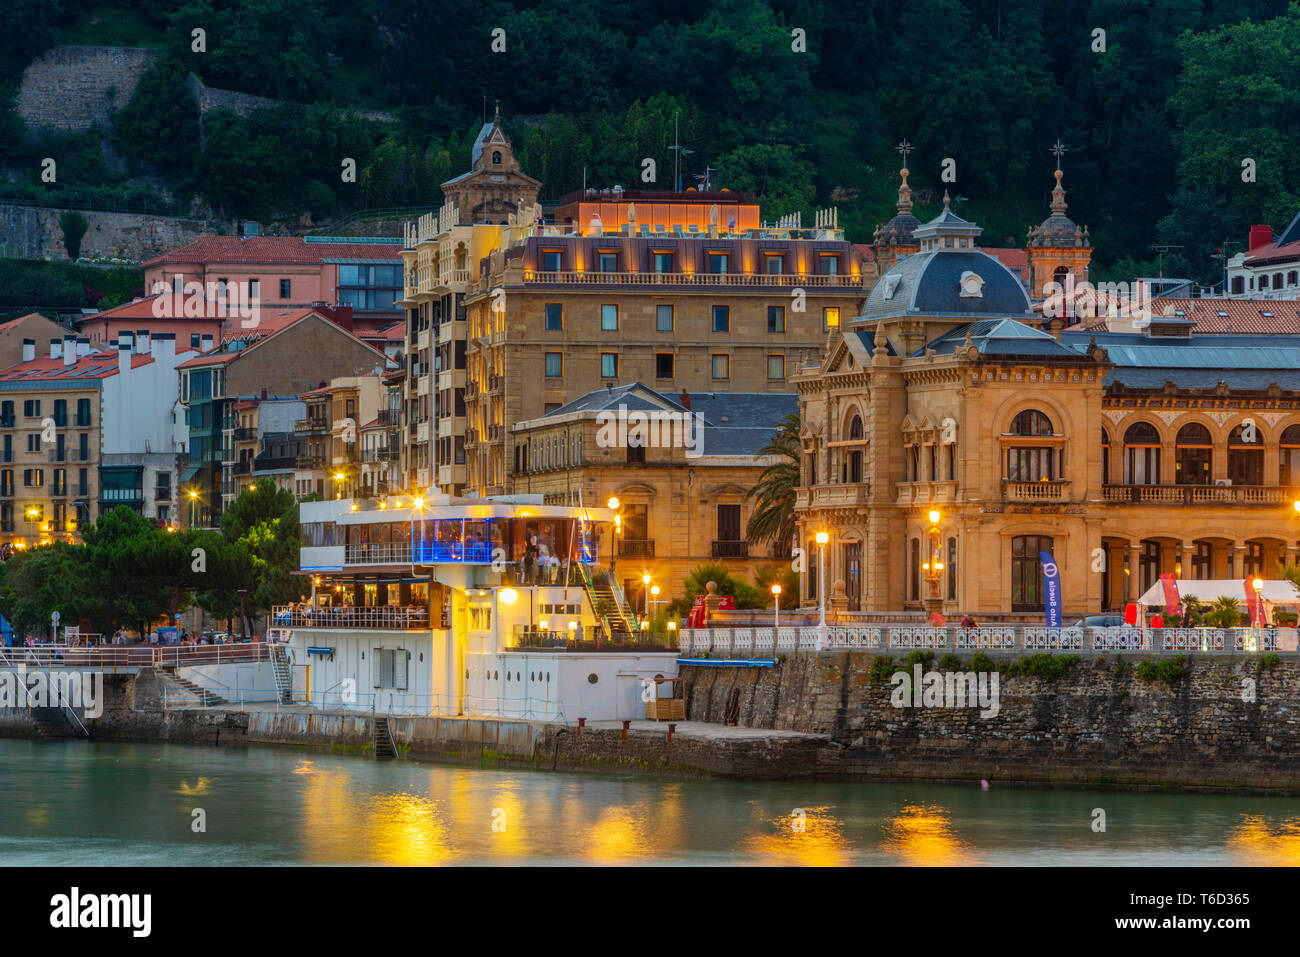 España, País Vasco, San Sebastián (Donostia), el Ayuntamiento y el casco antiguo de la ciudad iluminada por la noche Foto de stock